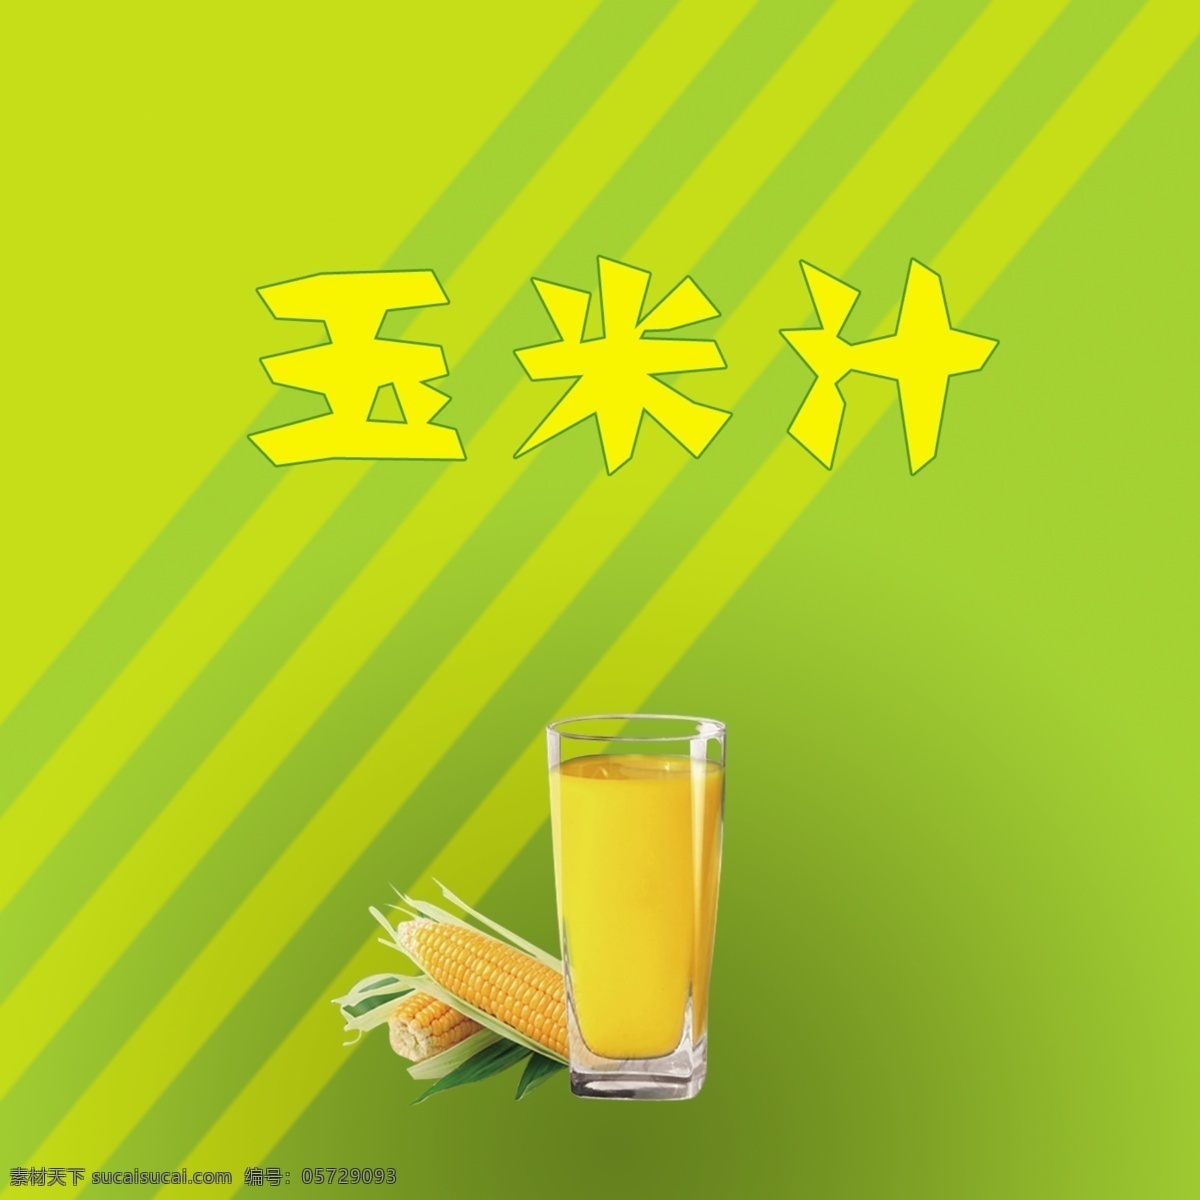 玉米汁 玉米 玉米饮料 饮料杯子 玉米棒子 饮料 分层 源文件